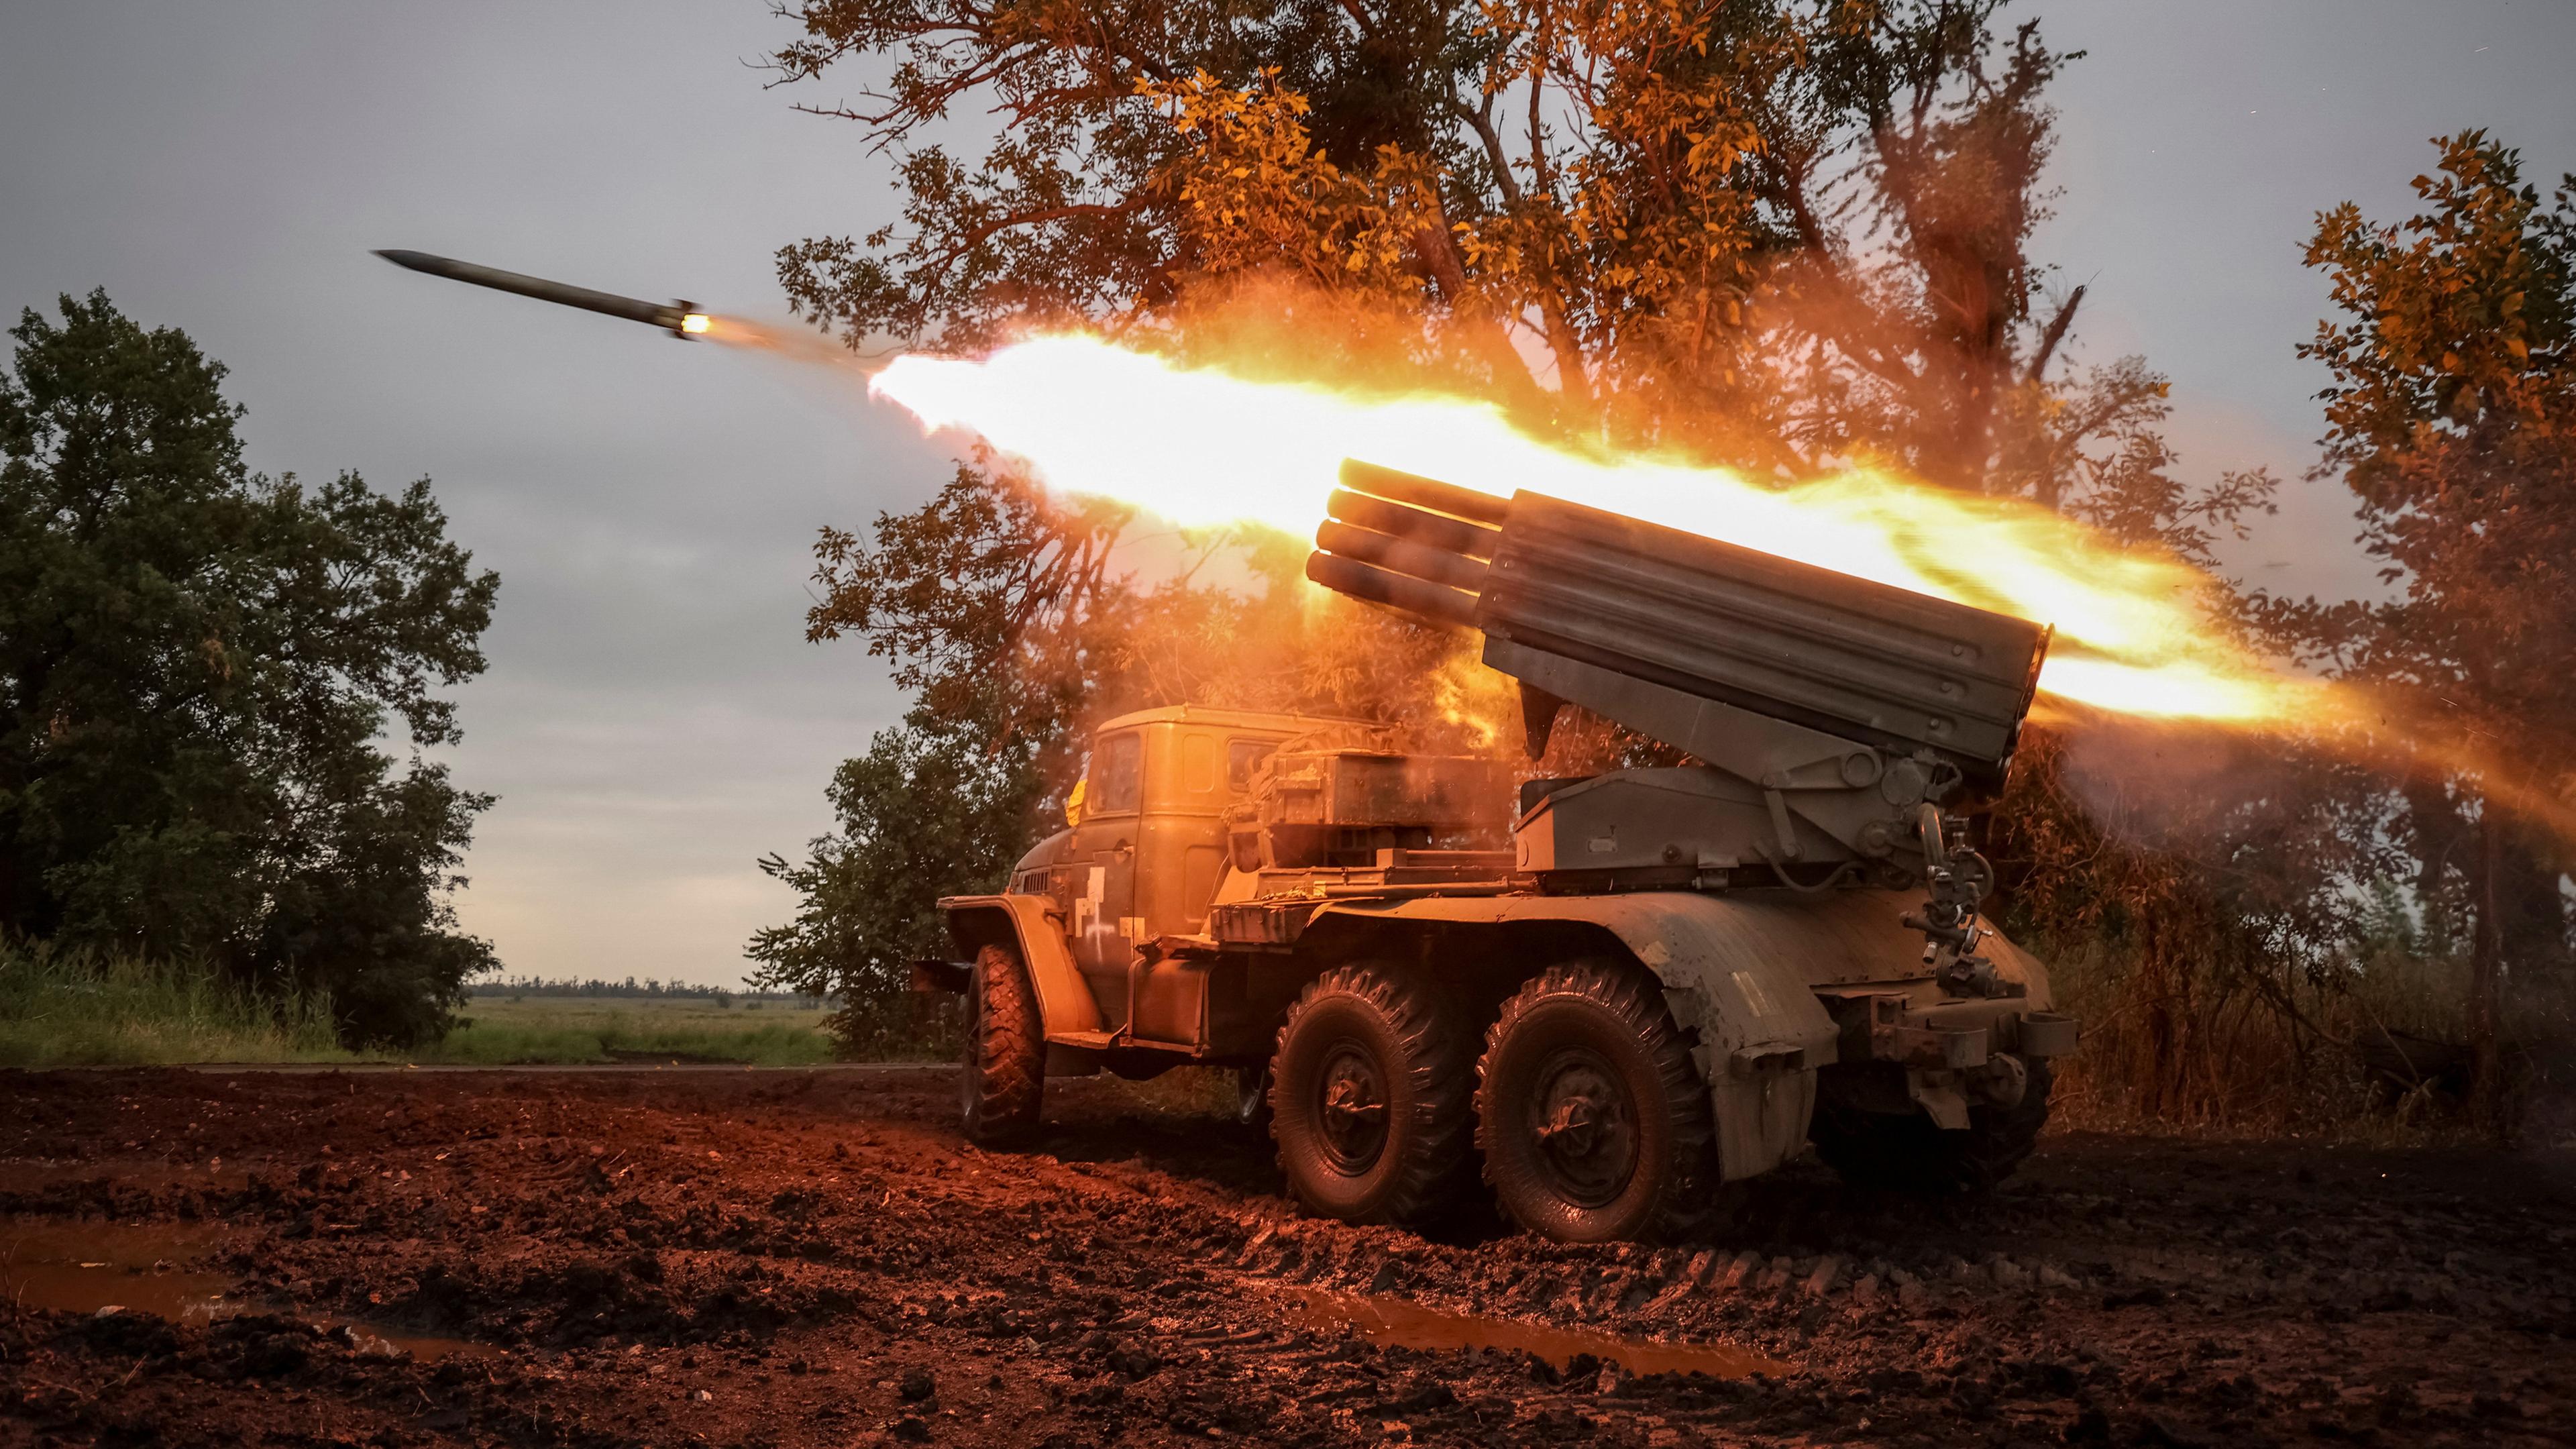 Ukrainischer BM-21 Grad Granatwerfer in Aktion